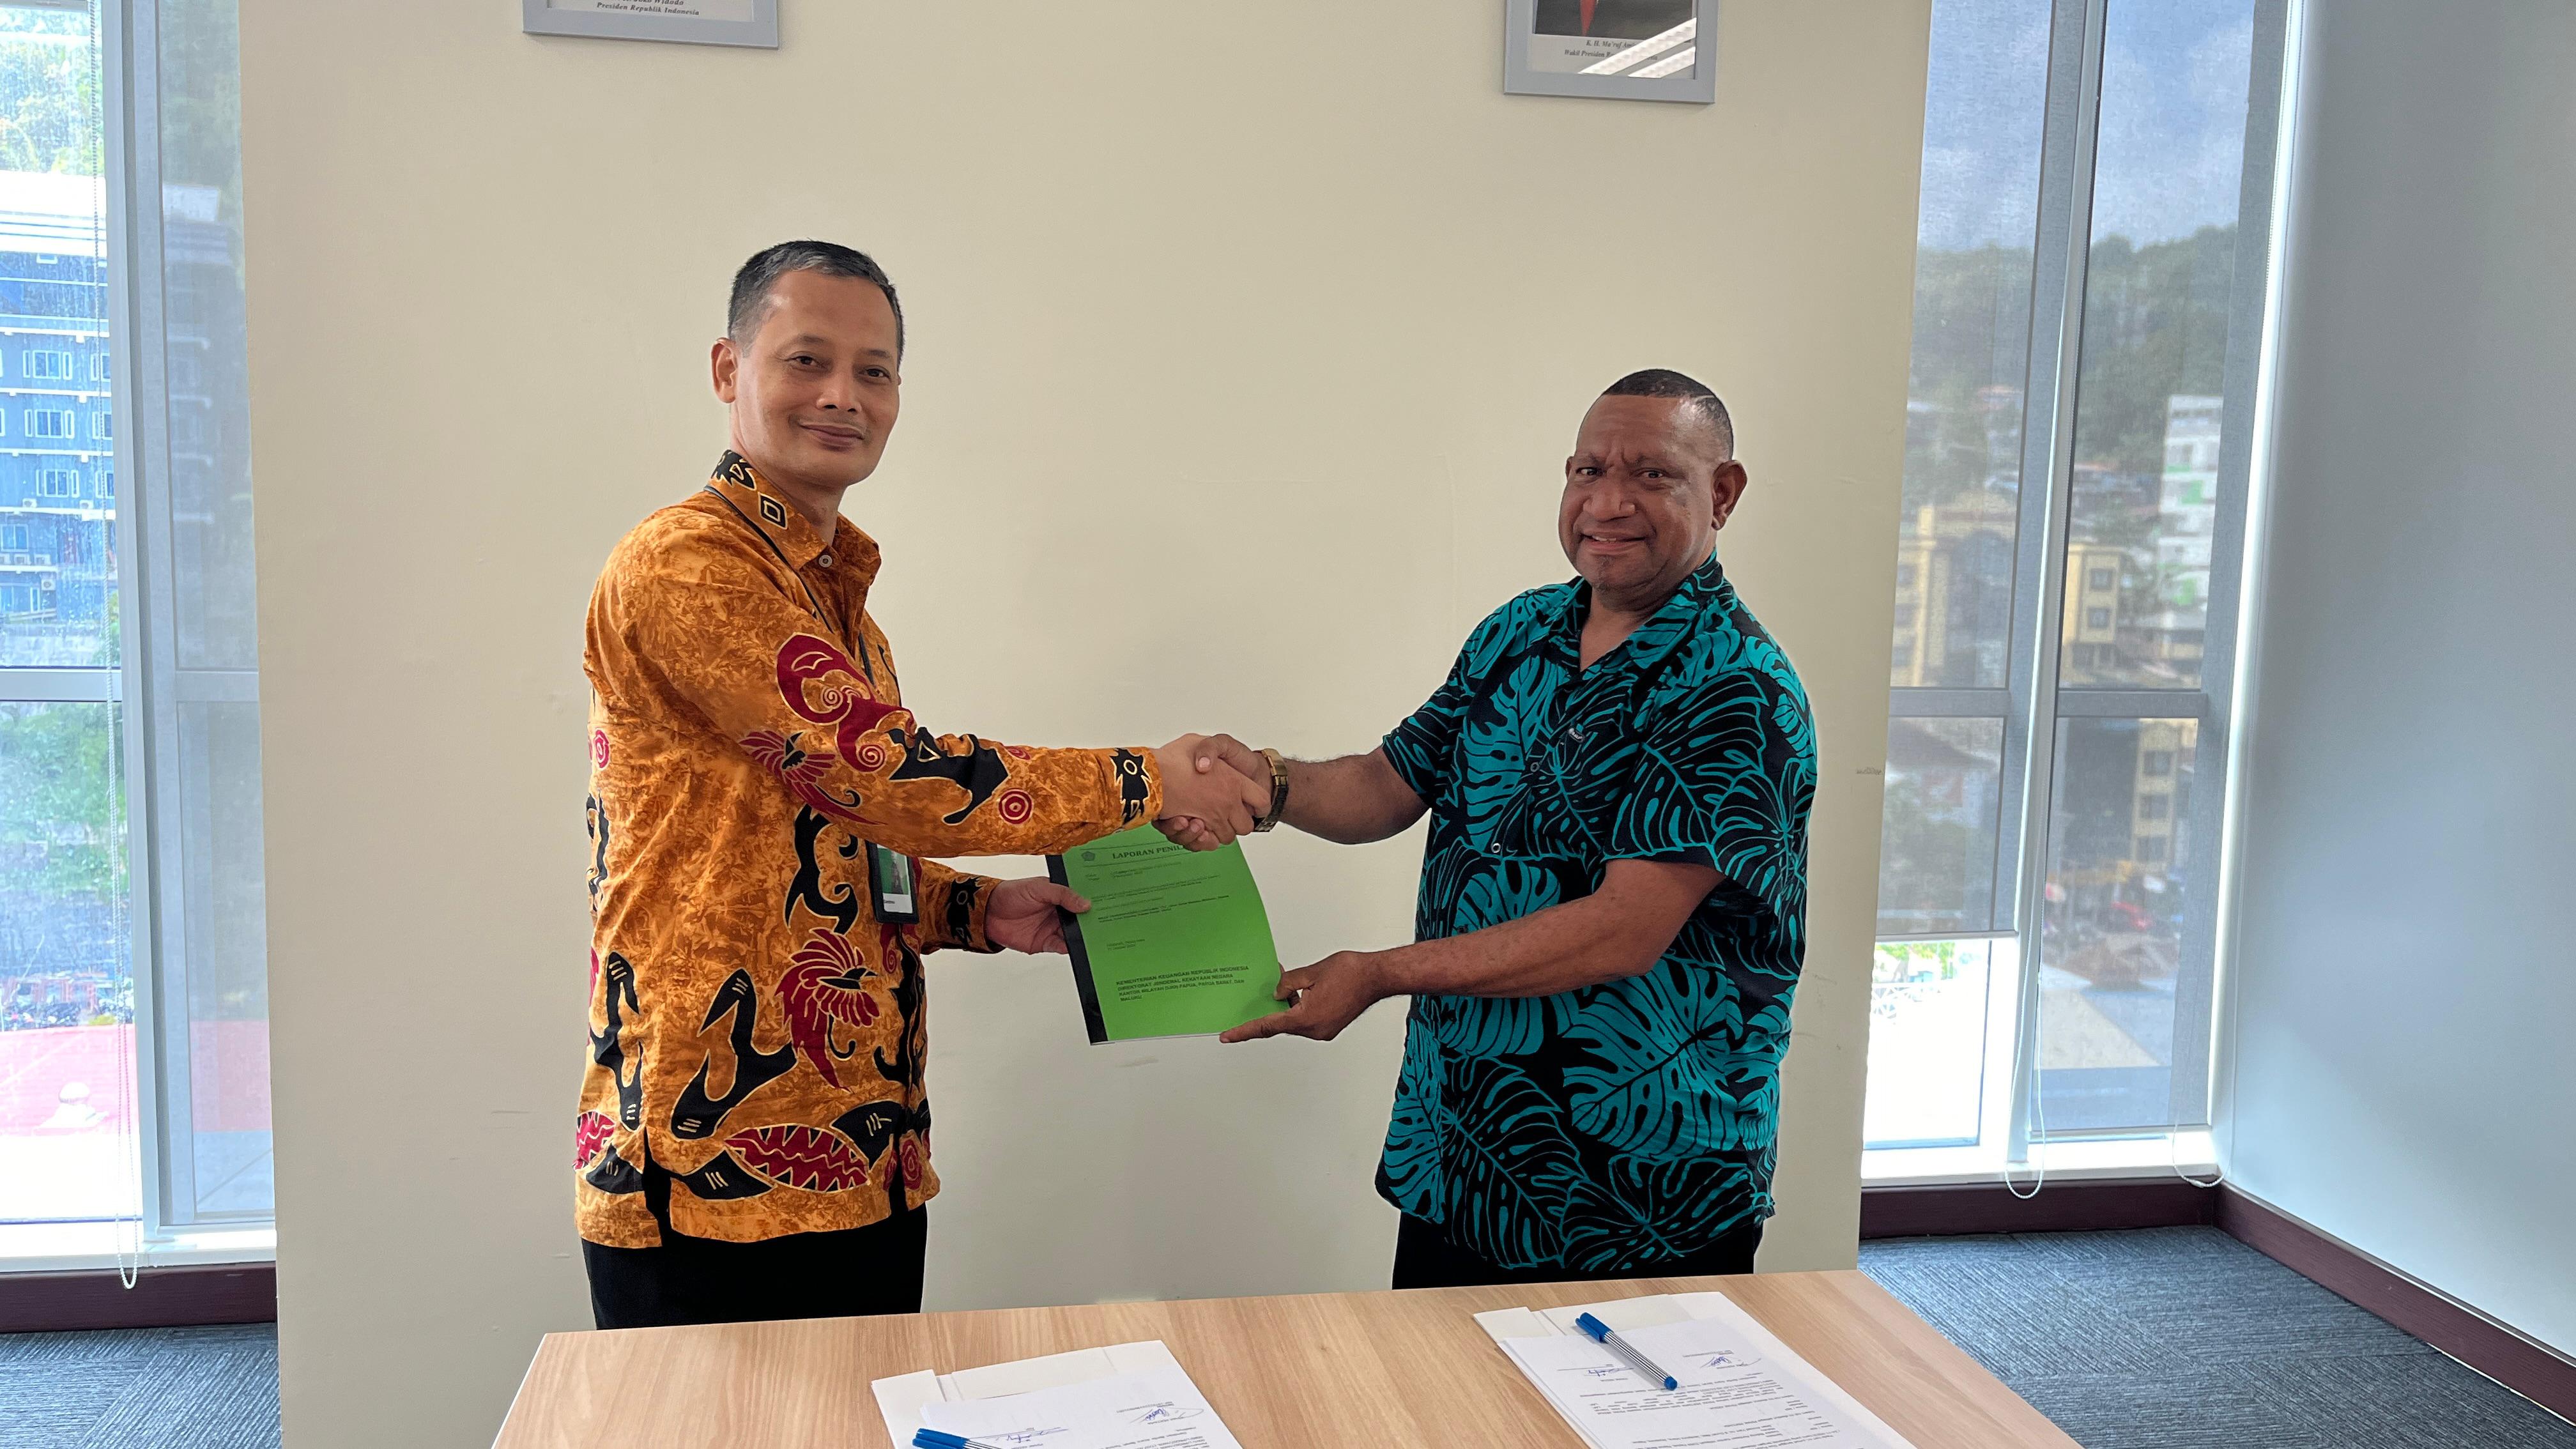 Kanwil DJKN Papua, Papua Barat, dan Maluku Menyerahkan Laporan Penilaian Barang Milik Daerah Pemerintah Provinsi Papua Barat